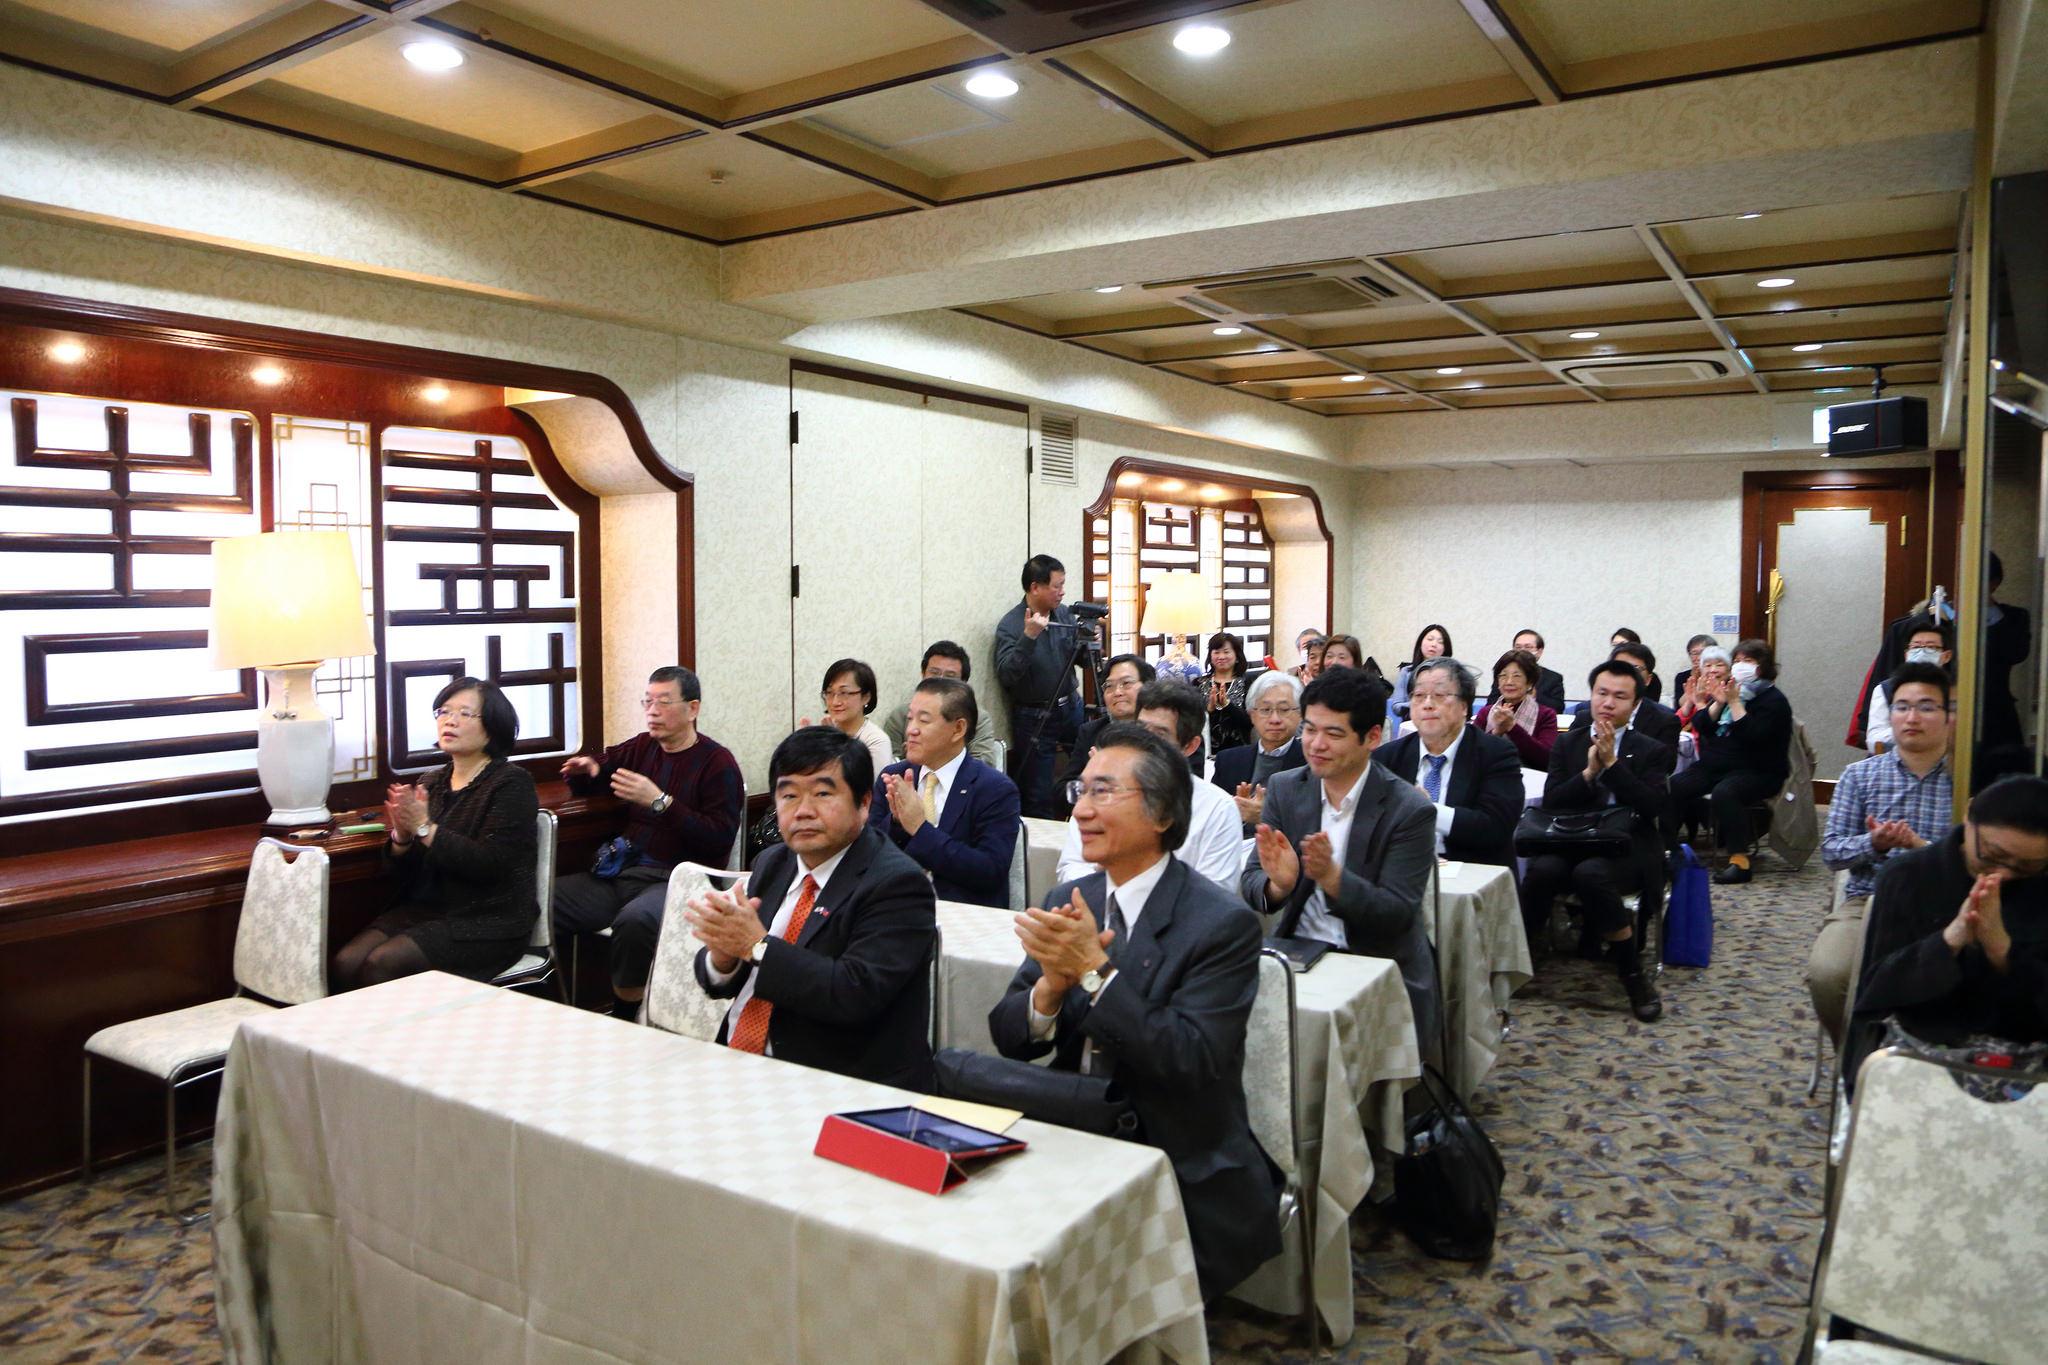 3/6戎總領事出席九州台日文化交流會主辦之2016年經濟座談會